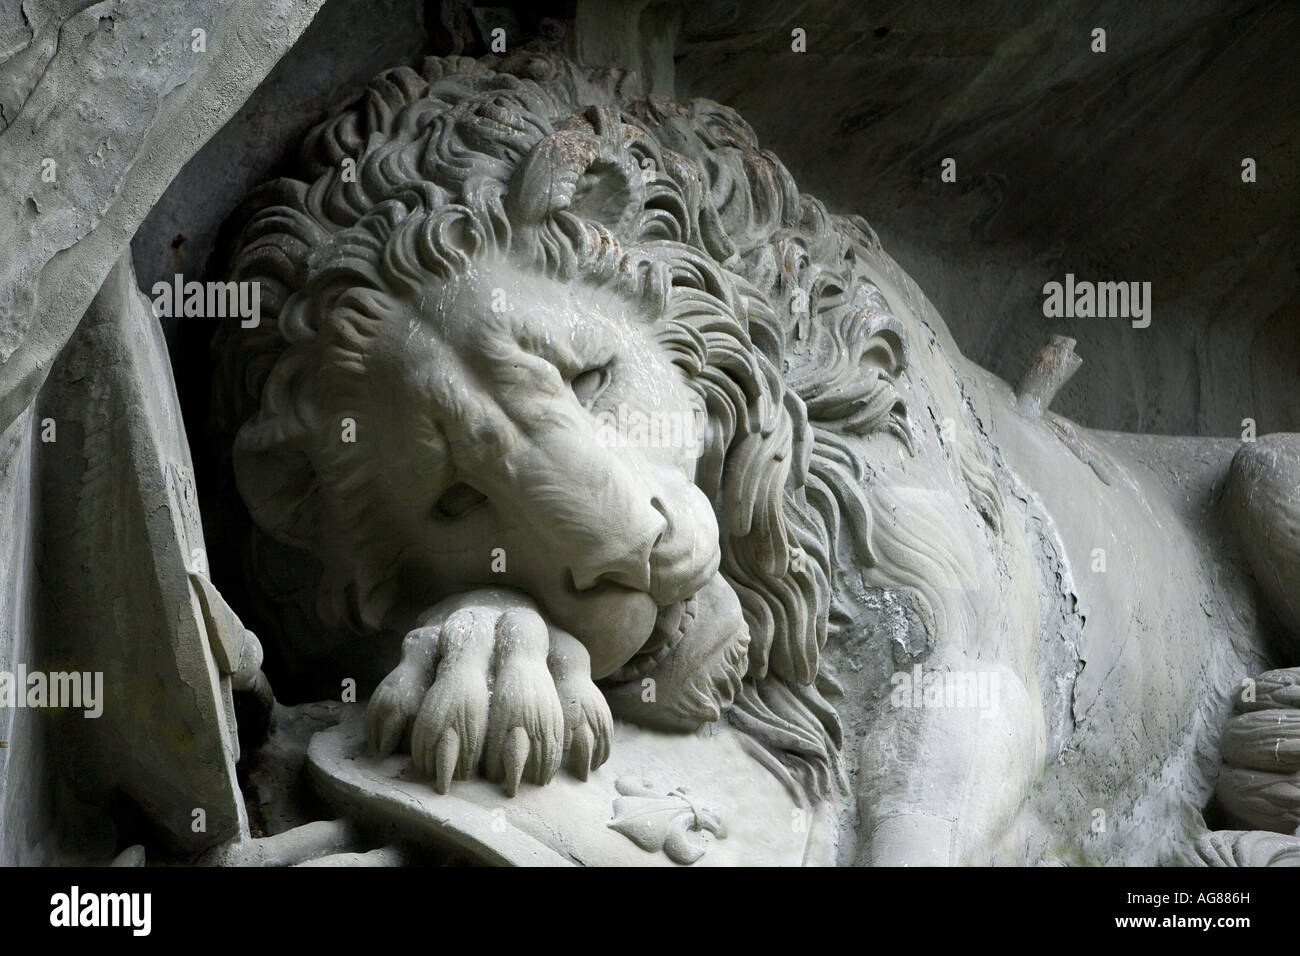 Dying lion, Lucerne, Switzerland Stock Photo